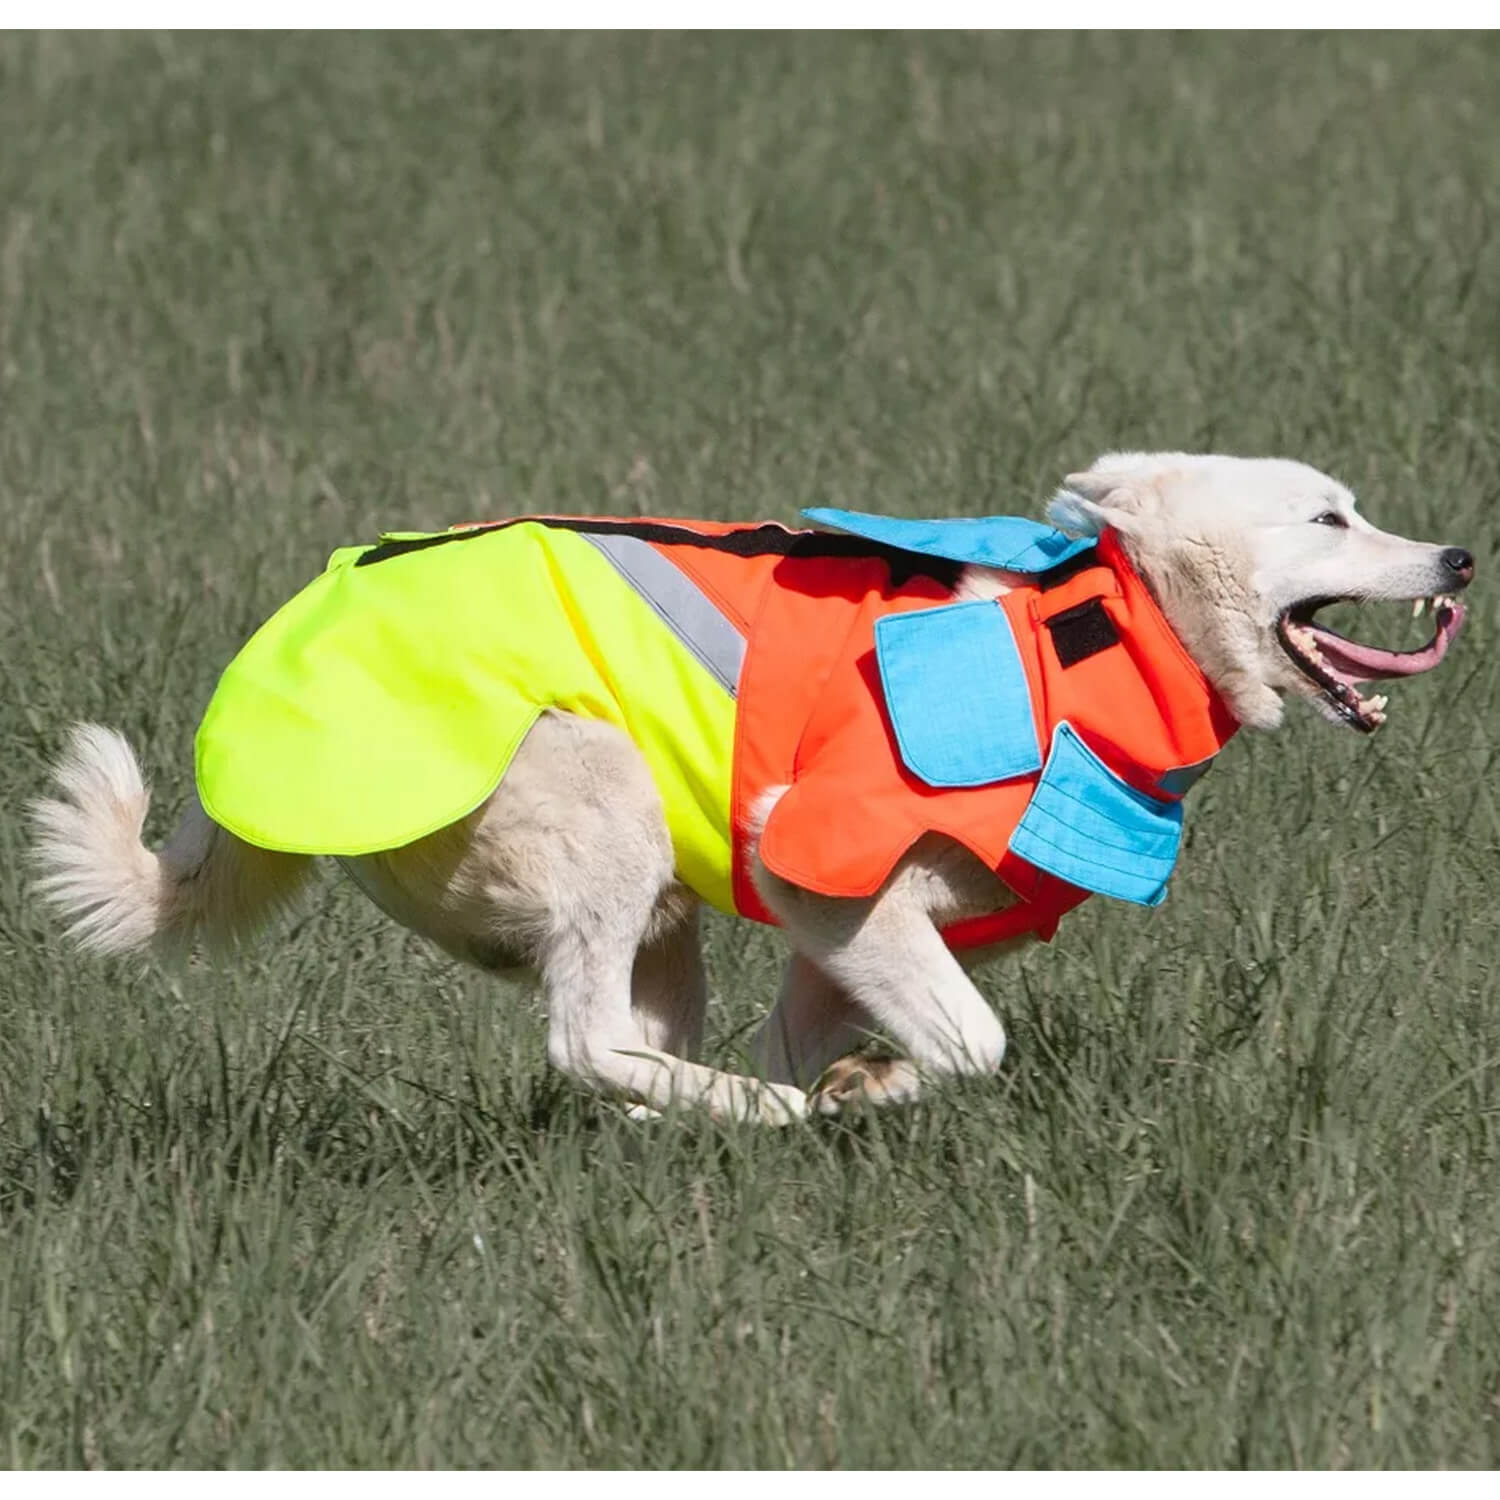 Tuskproof dog protection vest wild boar - Dog Protection Vests